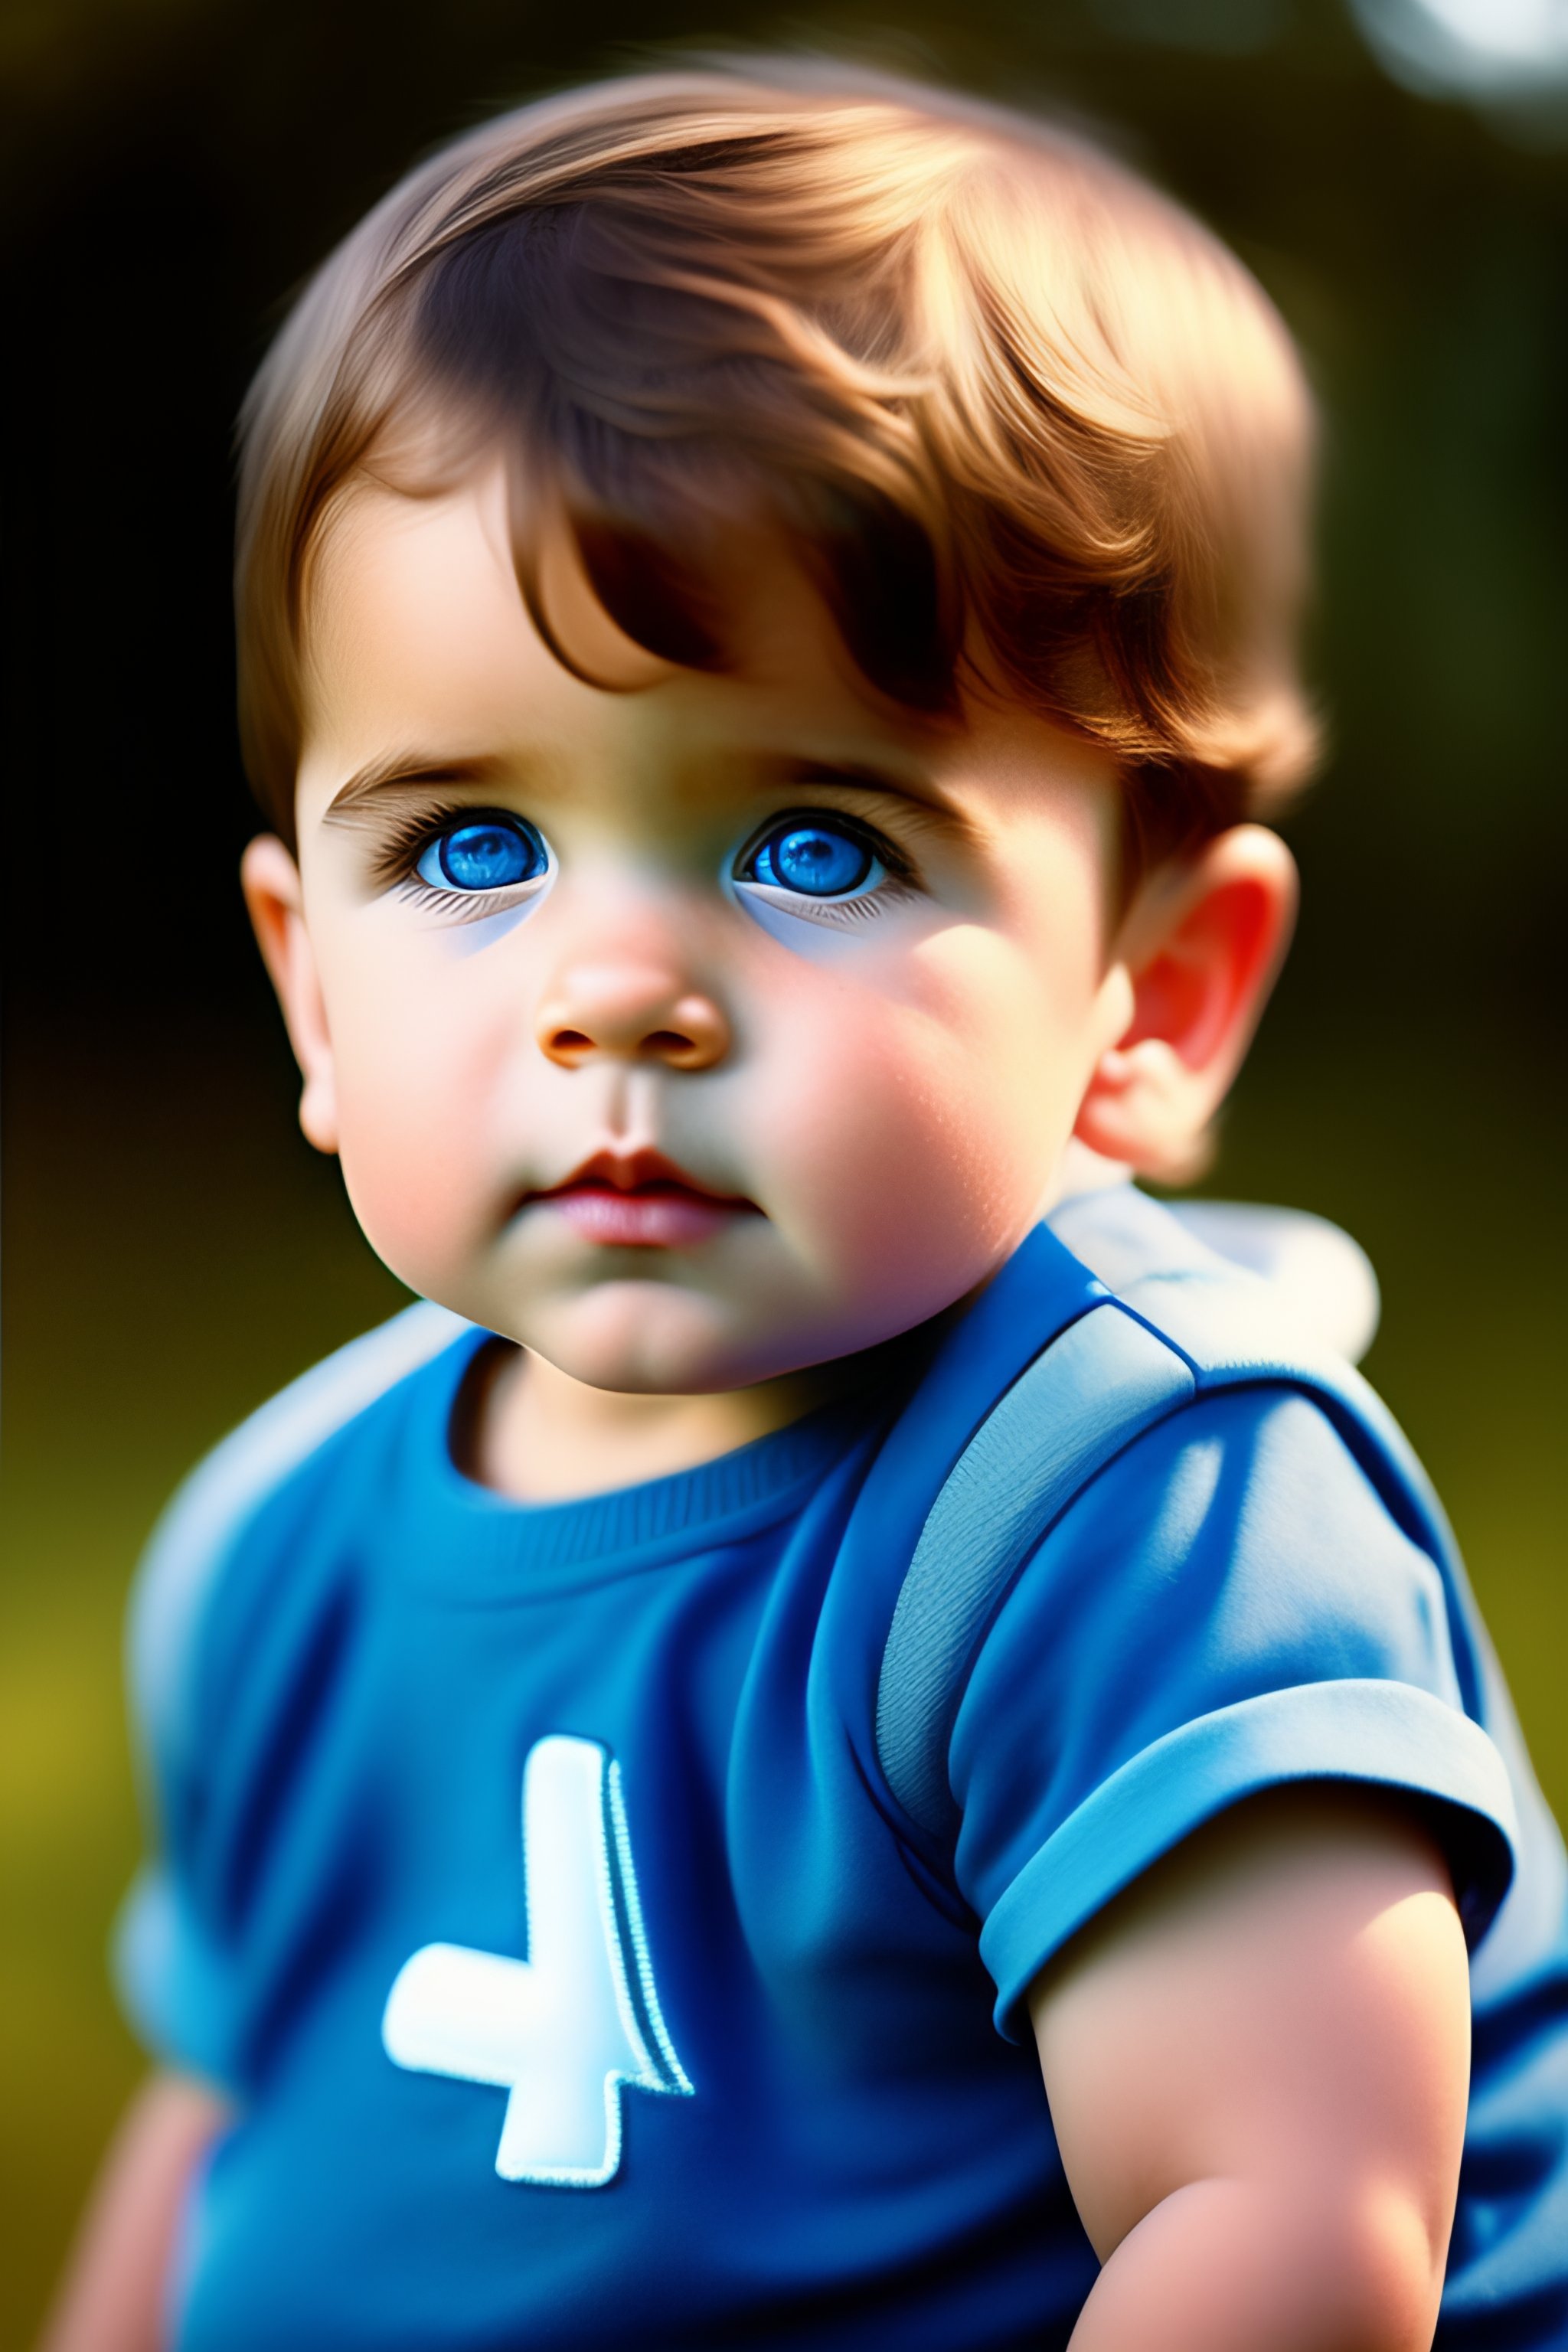 blue eyes baby boy